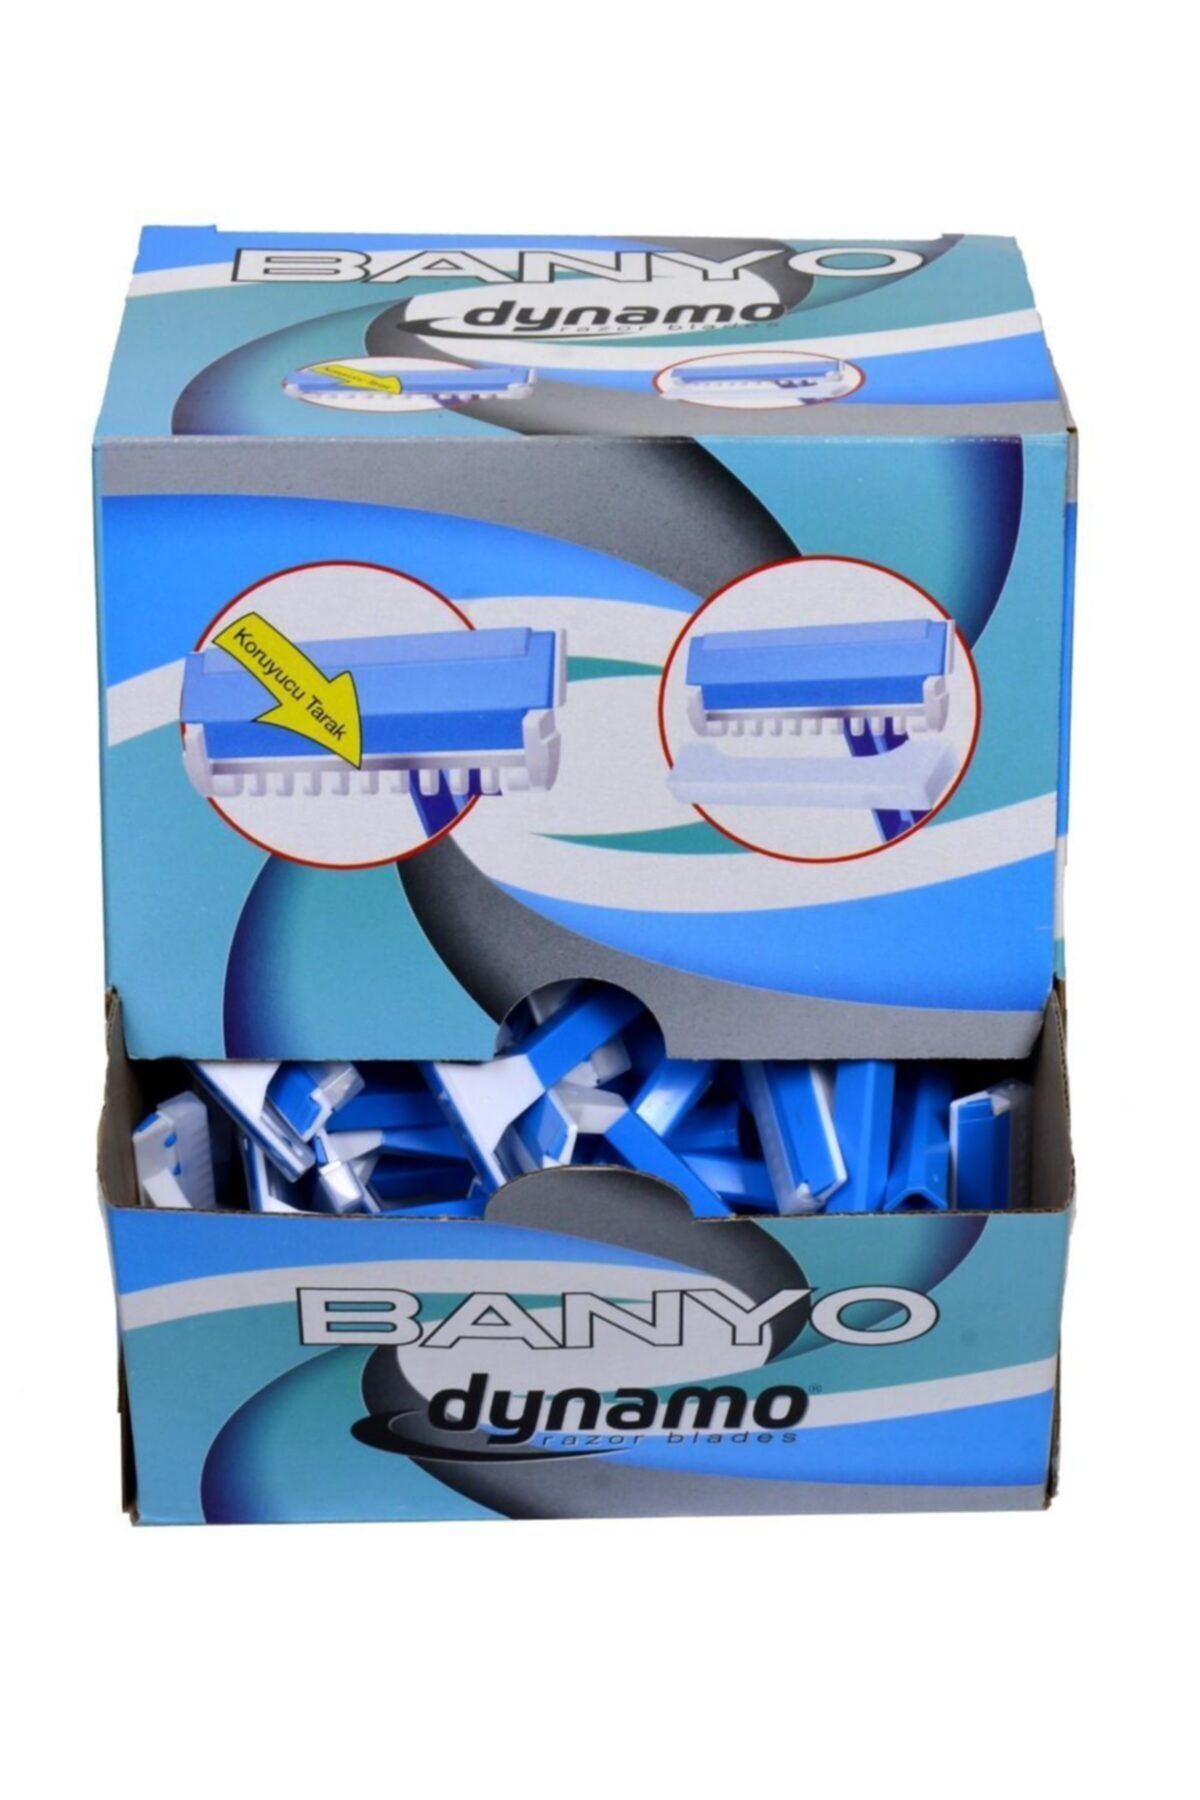 Dynamo 100 Adet Banyo Kullan At Tıraş Bıçağı